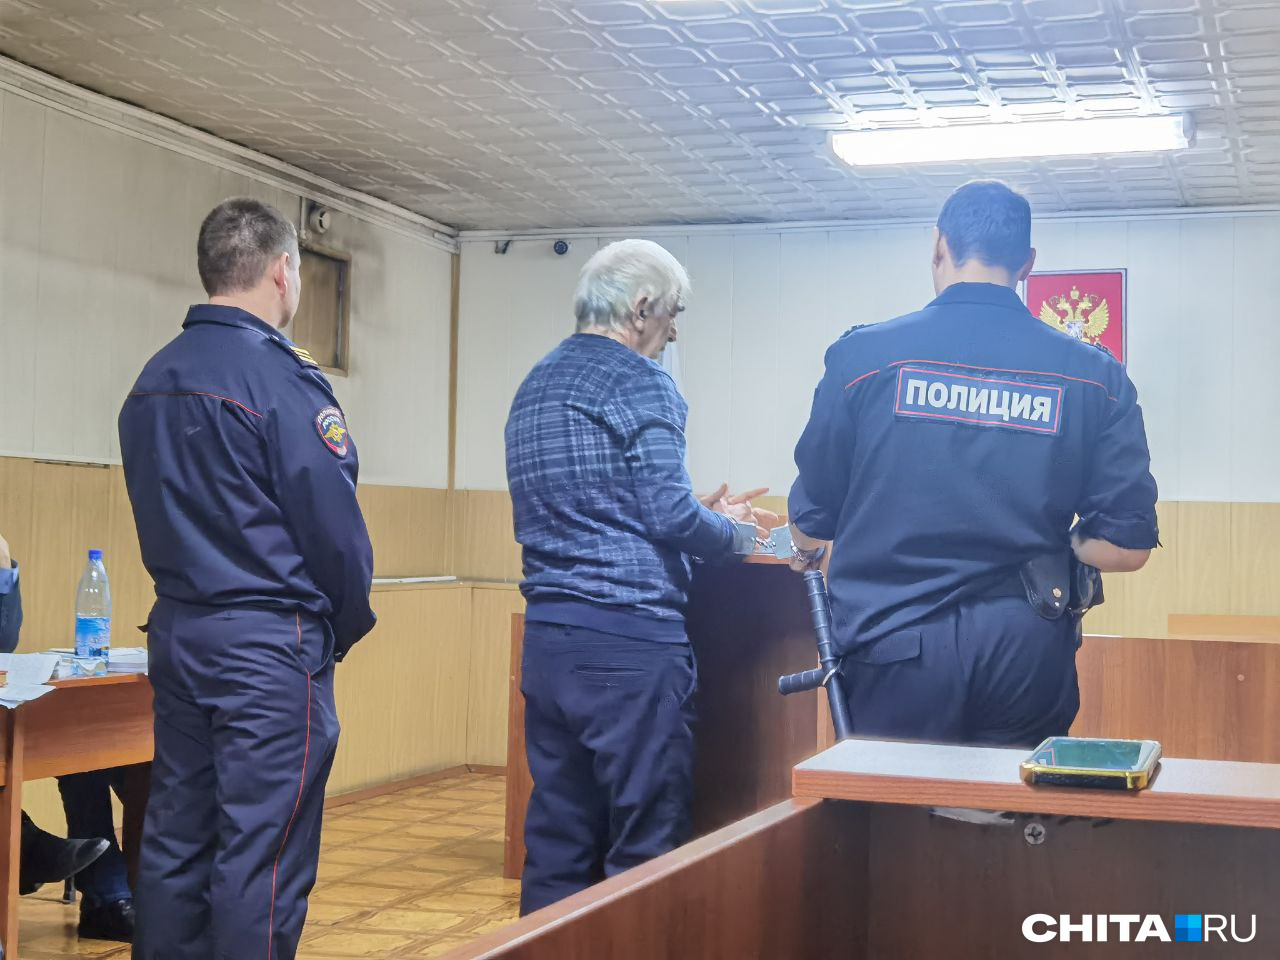 Свидетель по делу о взятках полицейских в Чите: Ли говорил, что отдал квартиру Москвитину